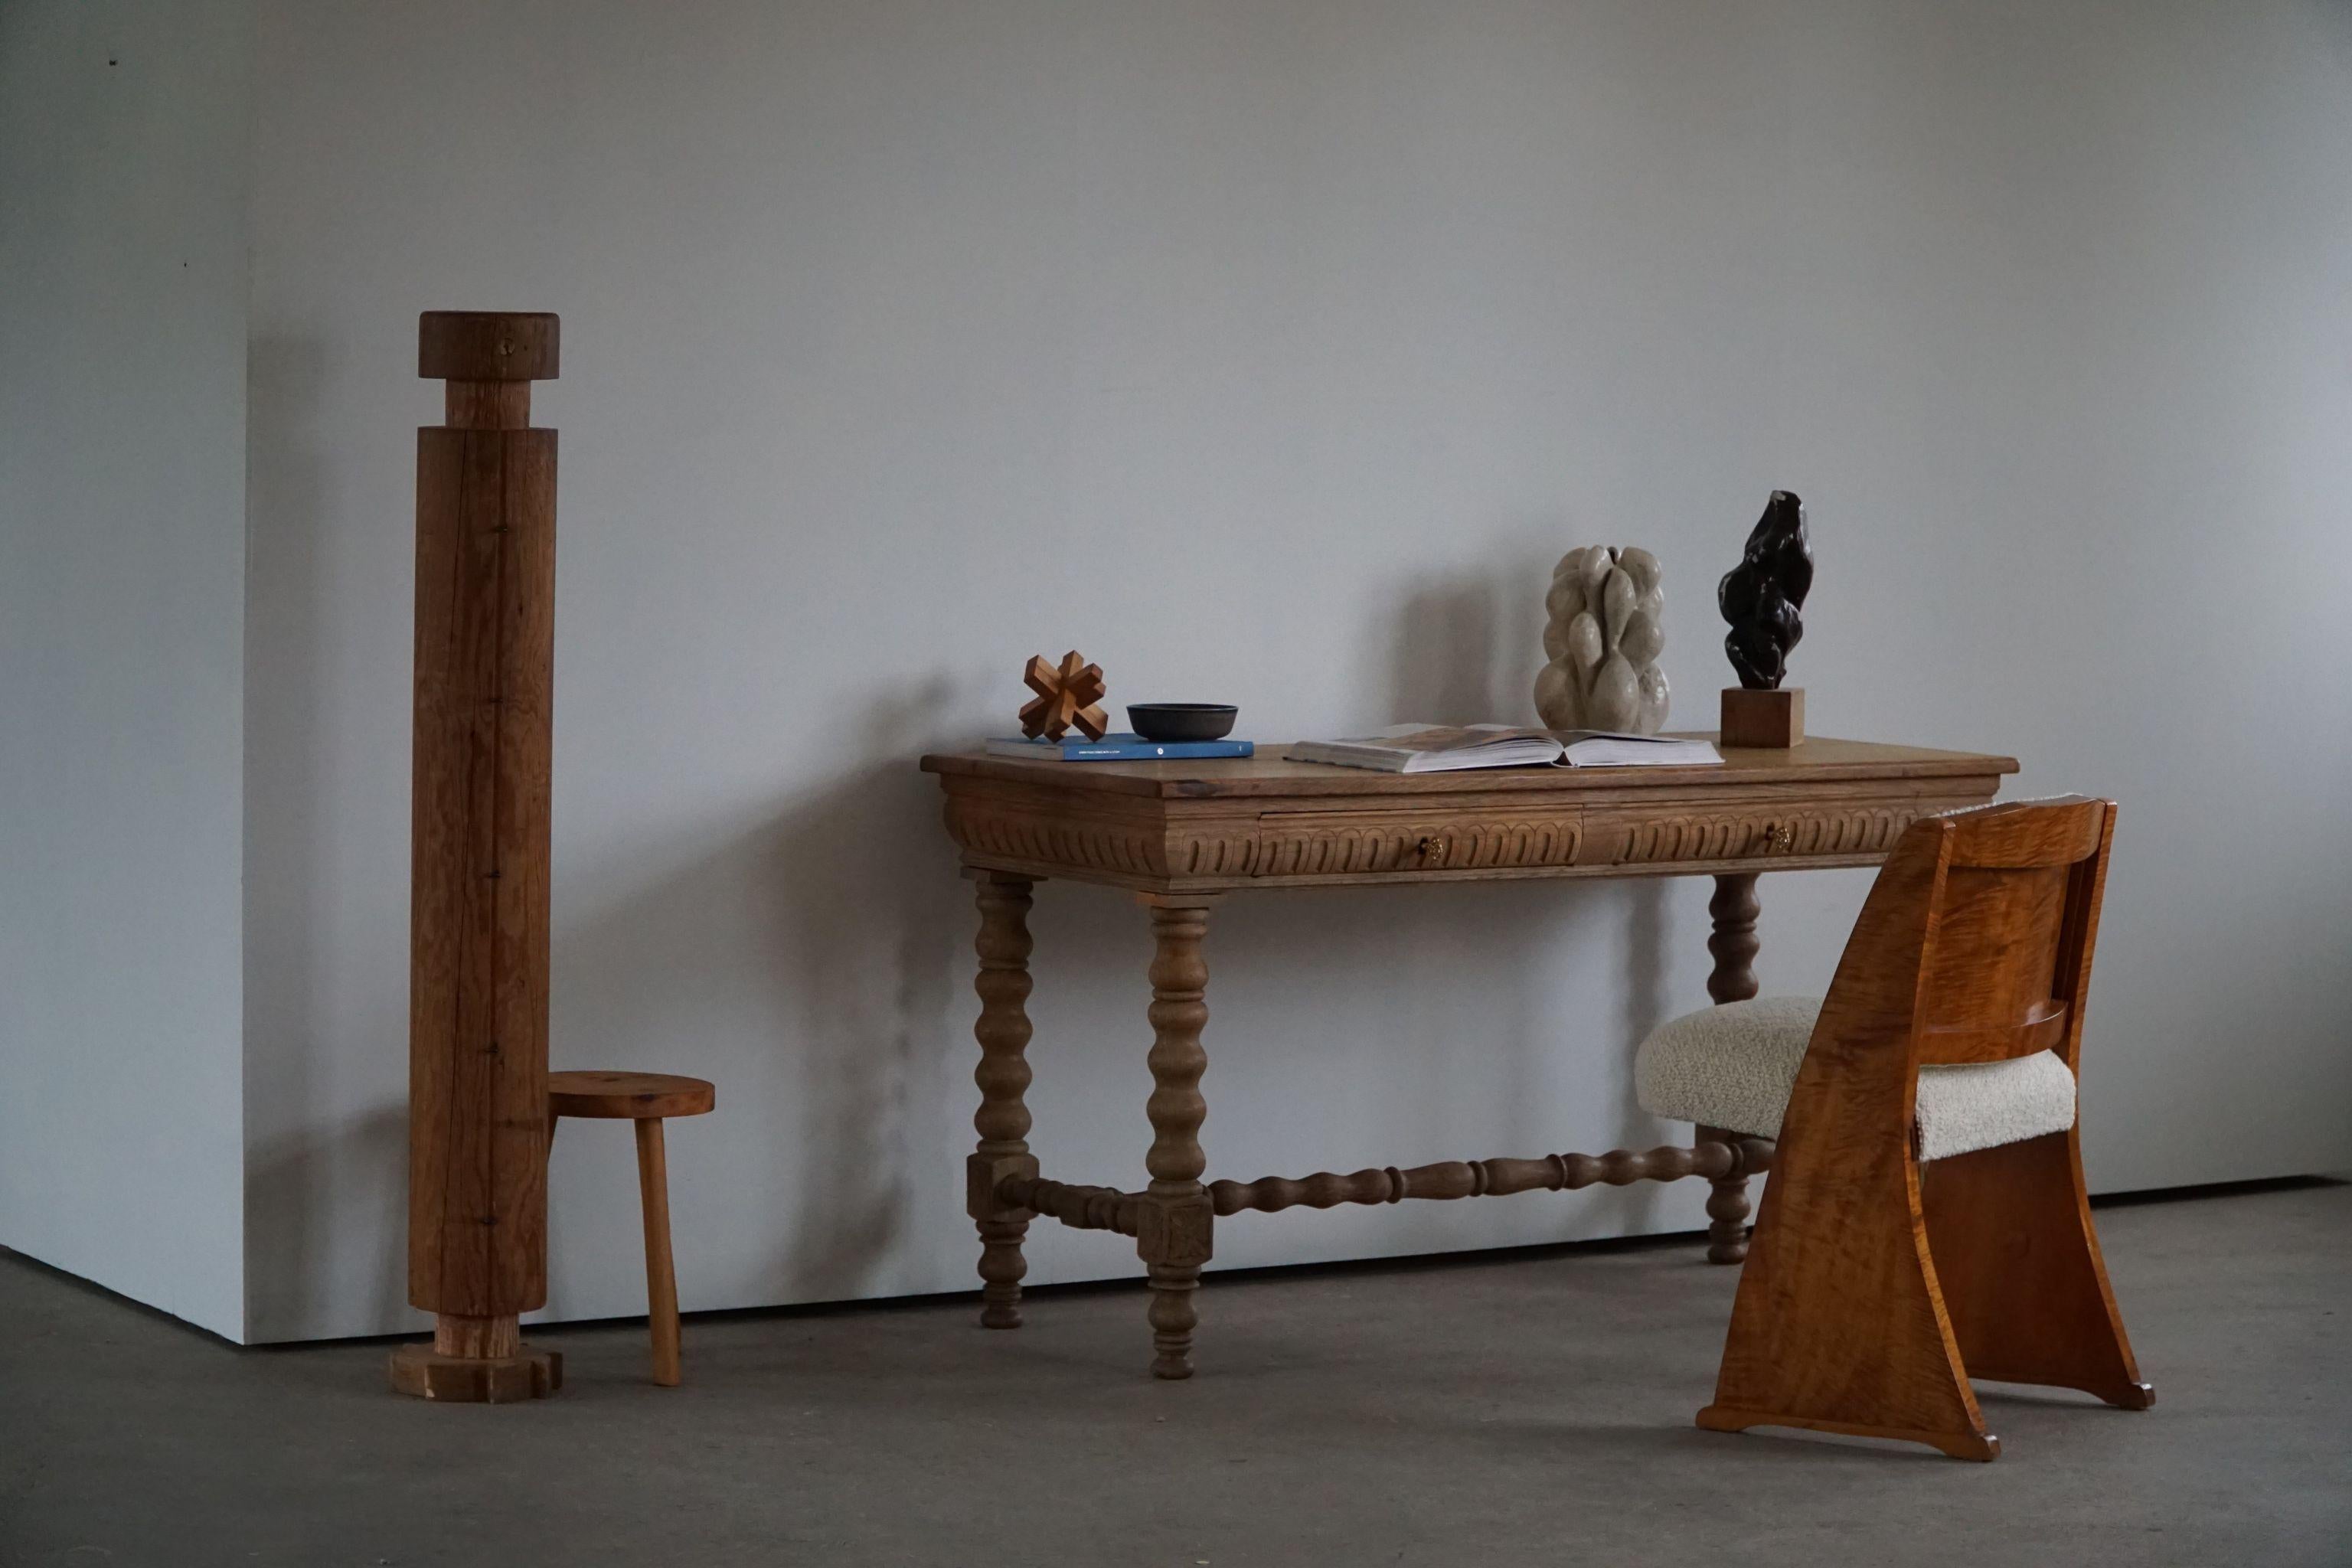 Une belle table sculpturale de salle à manger / bureau de dame en chêne massif. Sculpté à la main par un ébéniste français au XIXe siècle. Elegant pieds tordus sculptés, une belle figure pour l'intérieur moderne. 

Cette table étonnante